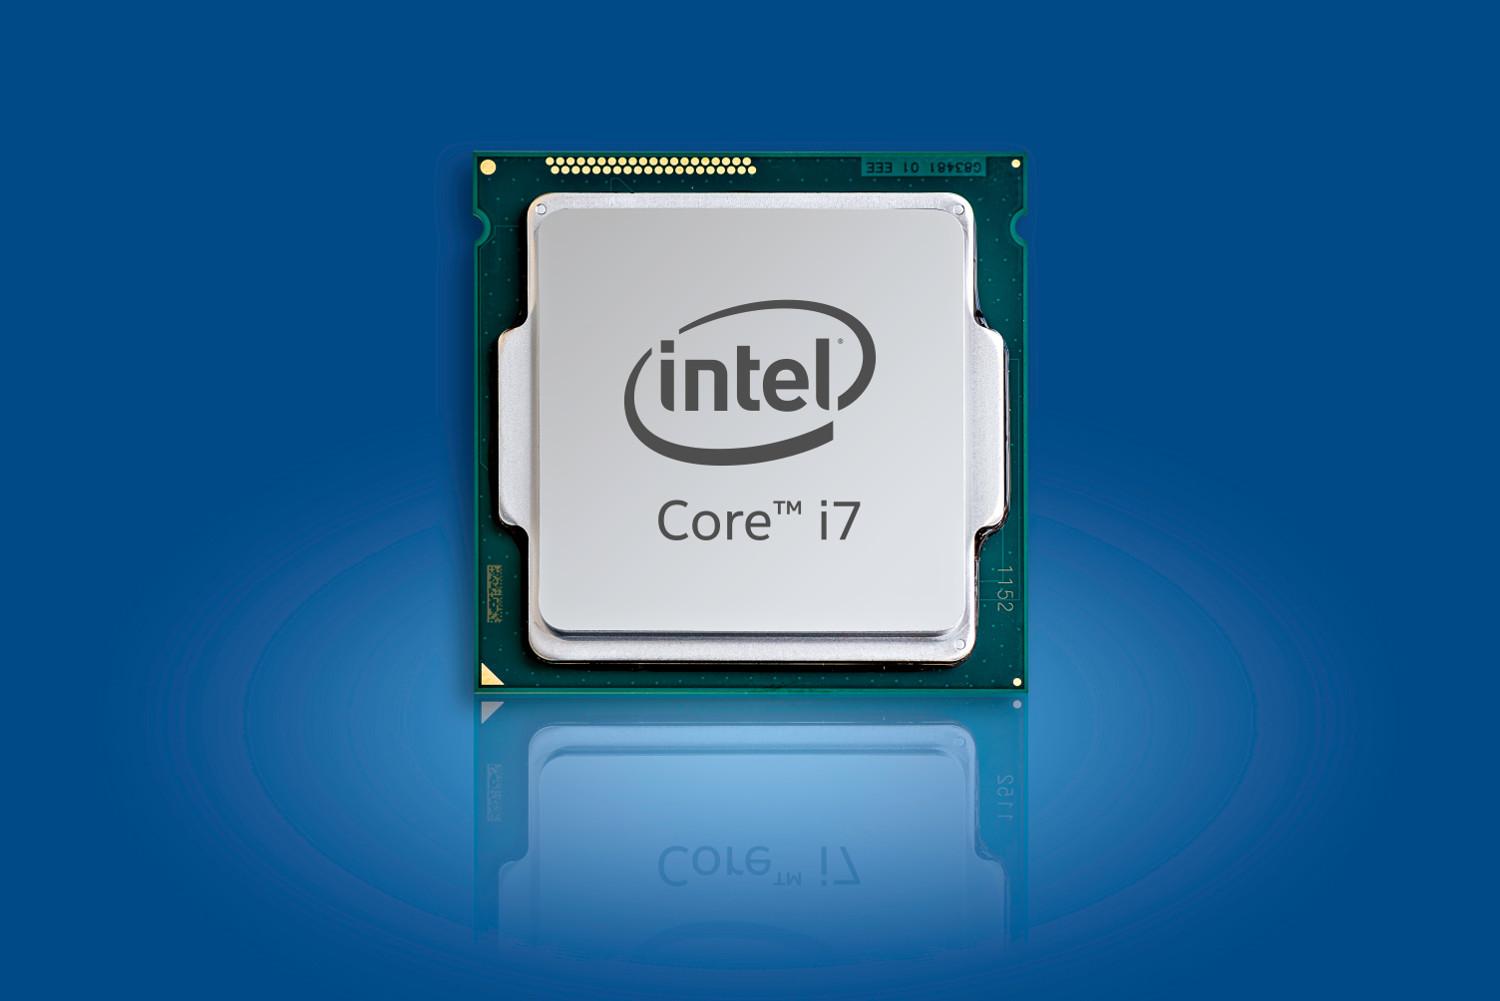 Интел k. Процессор Intel Core i7-9700k. Intel Core i7-10700f lga1200, 8 x 2900 МГЦ. Процессор Intel Core i7 10700. Процессор Intel Core i7-8700k.